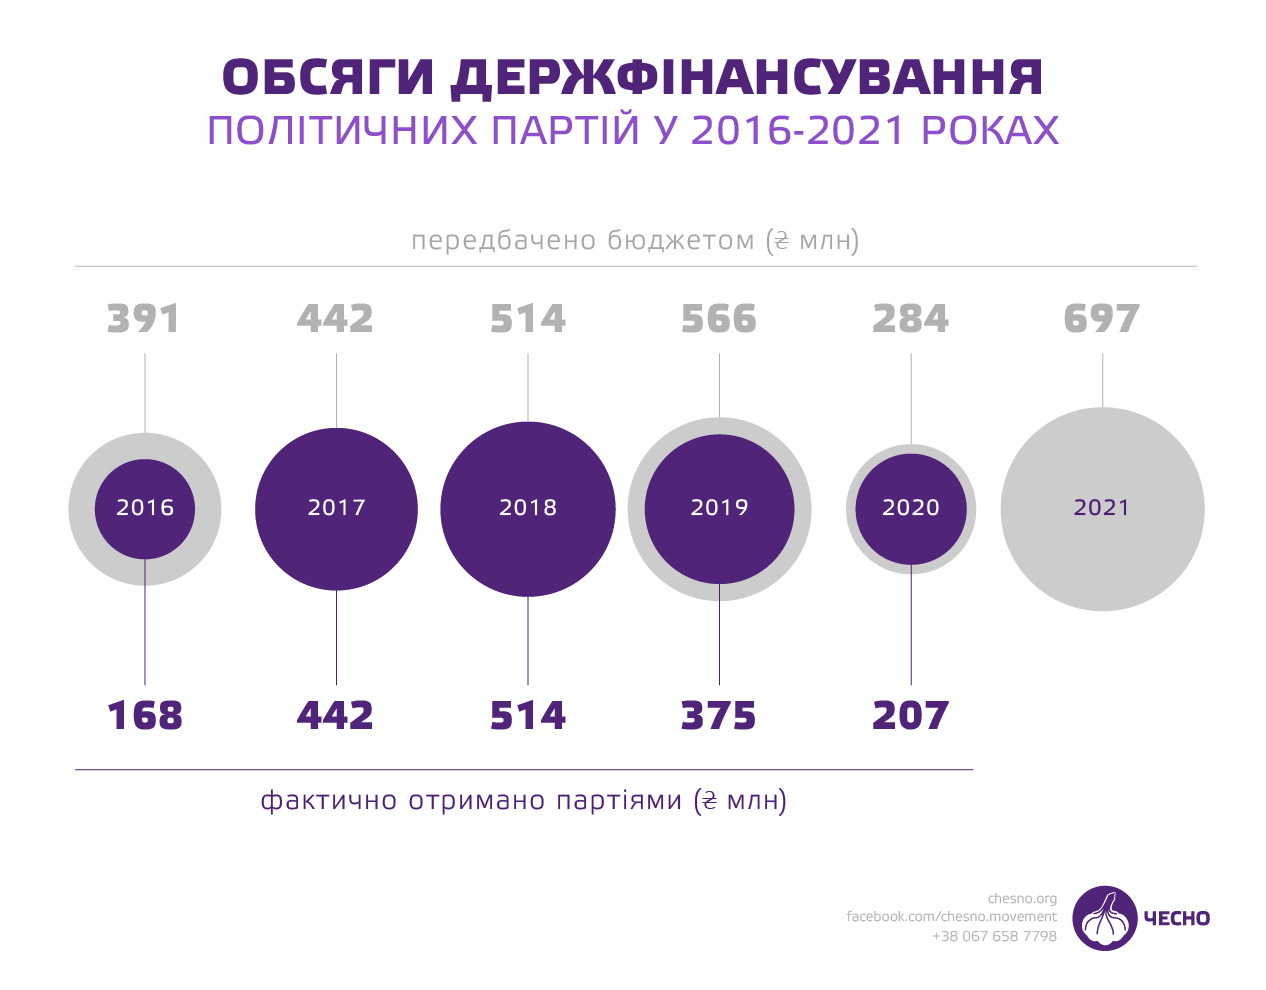 Украинским партиям в 2021 году увеличили финансирование до 697 млн грн ...